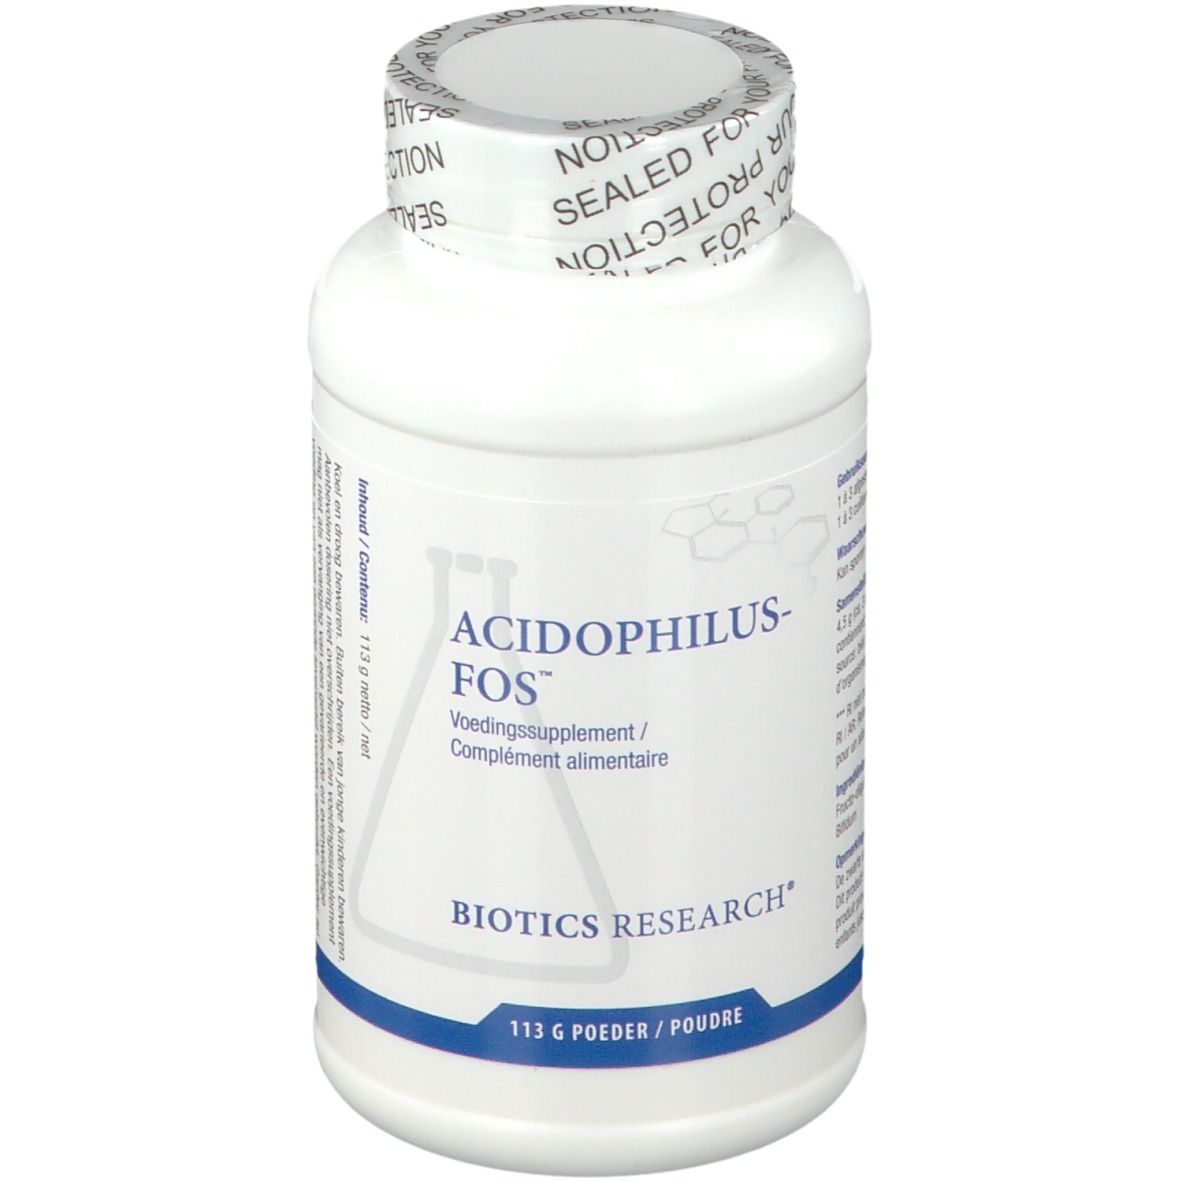 Image of BIOTICS RESEARCH® Acidophilus-FOS